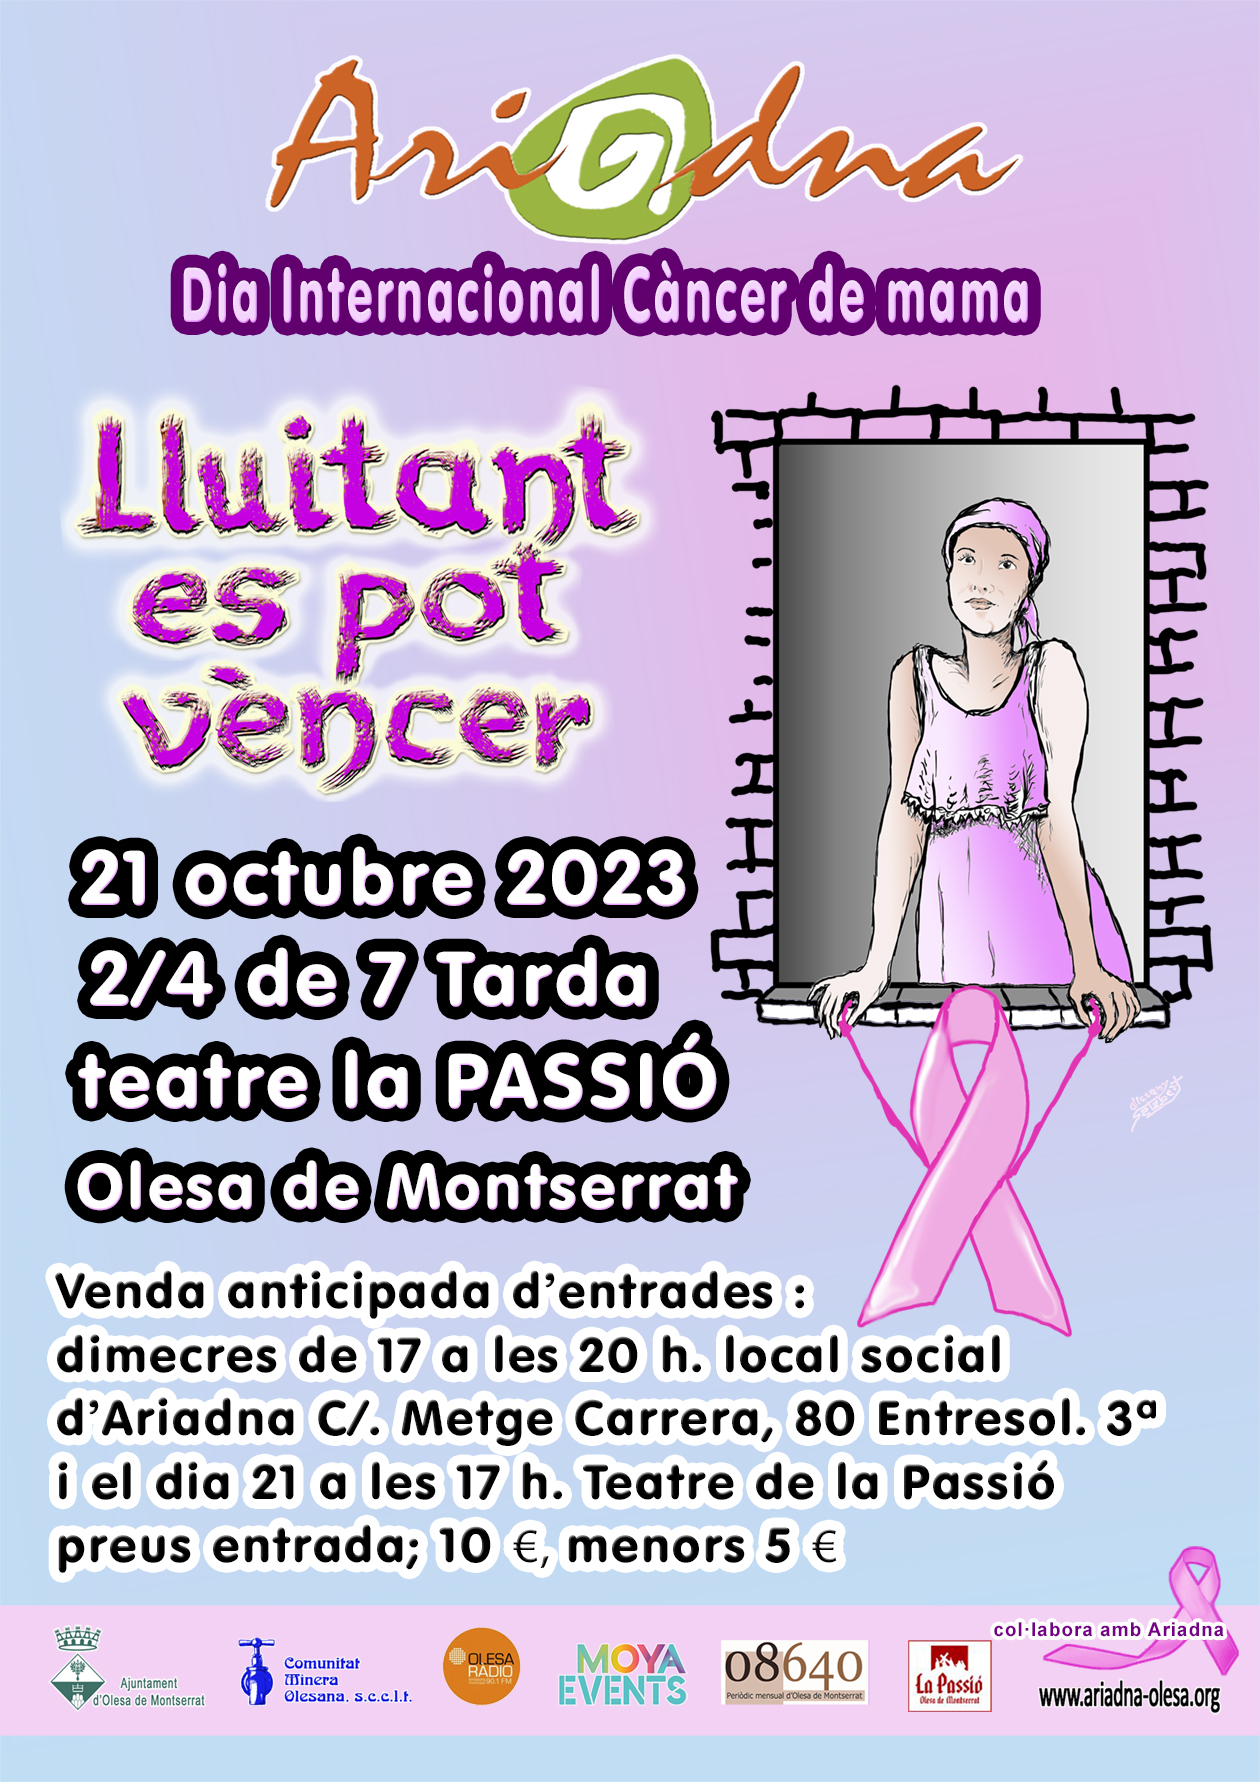 Cartell de l'acte "lluitant es pot vèncer" que organitza l'Assoc. Ariadna pel Dia Internacional del Càncer de mama 2023